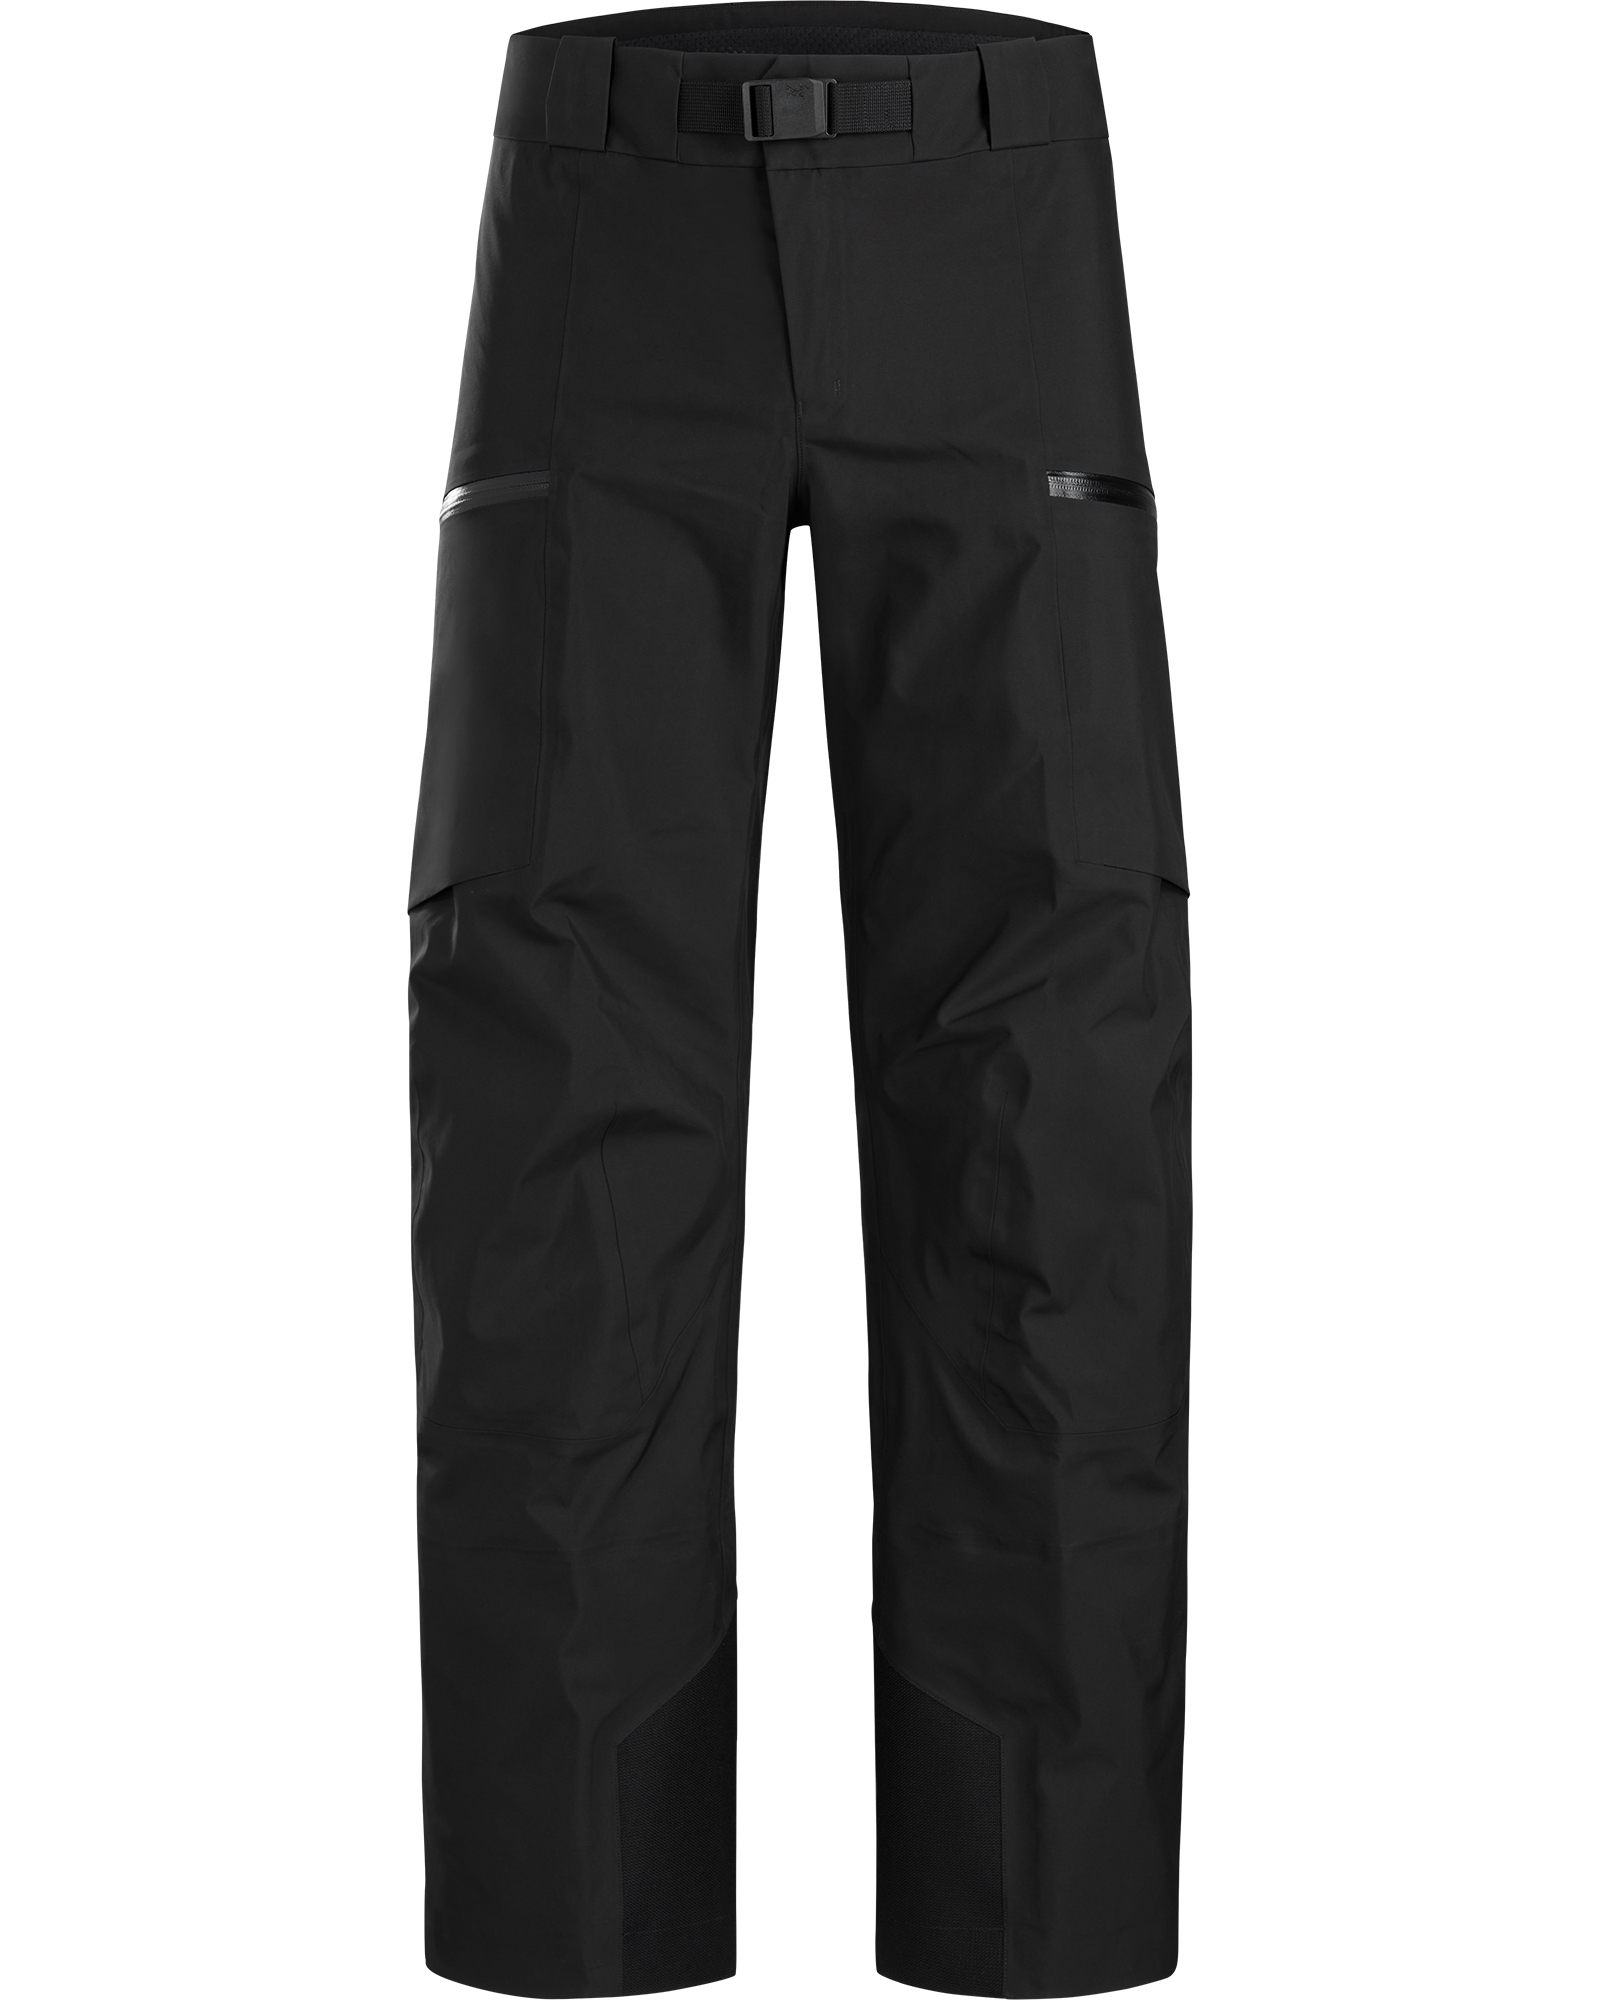 Arc’teryx Sabre GORE TEX Men’s Pants - black XL